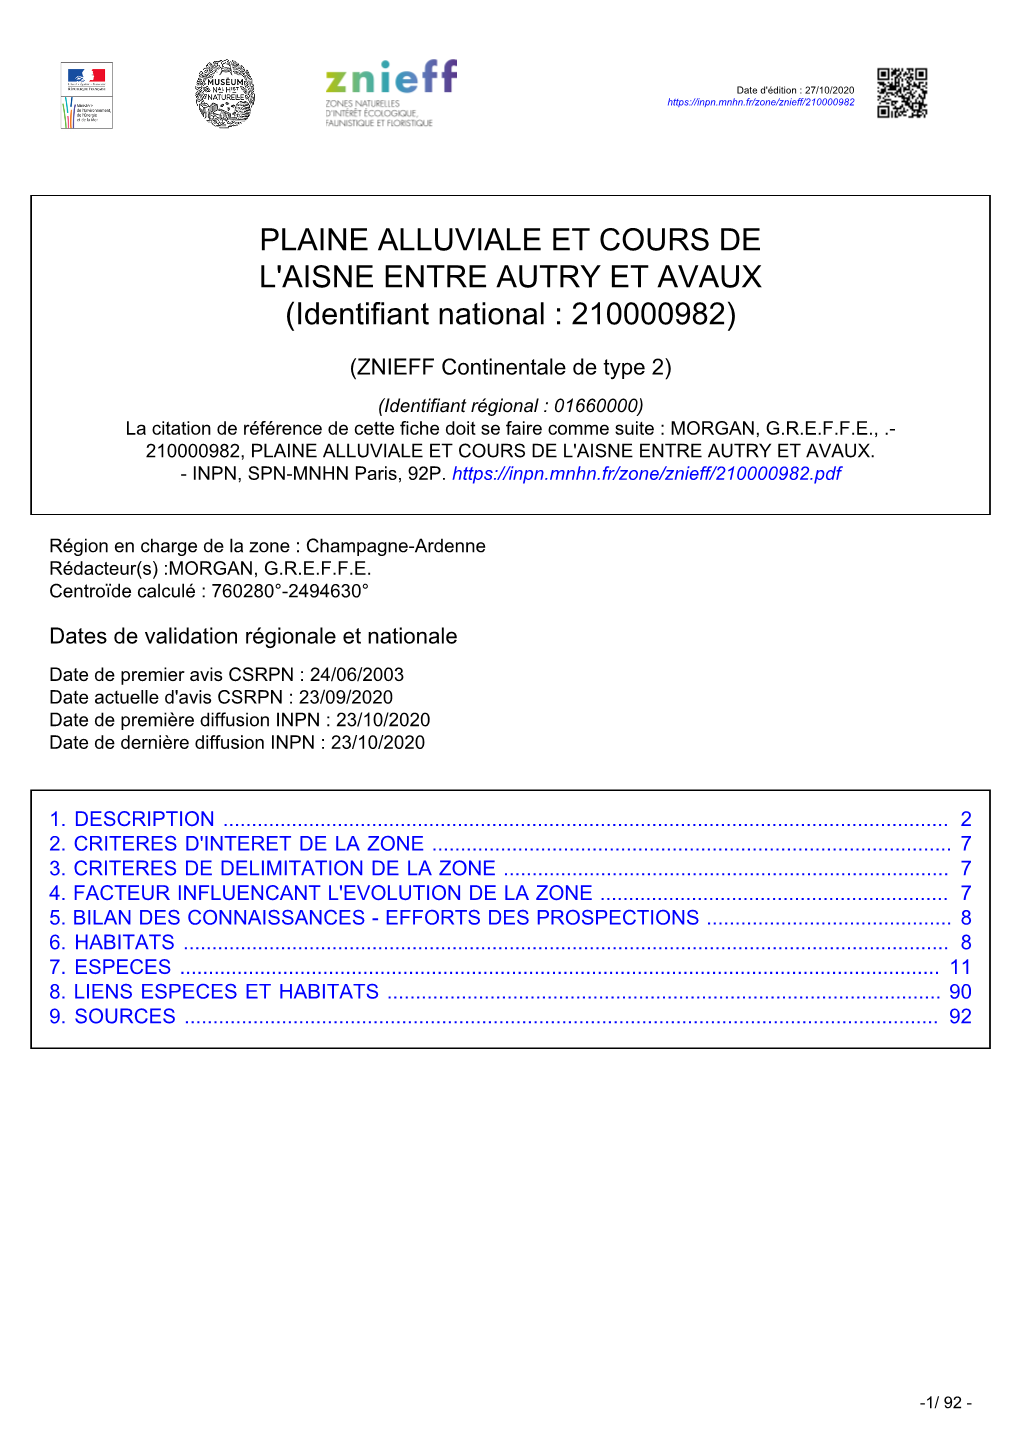 PLAINE ALLUVIALE ET COURS DE L'aisne ENTRE AUTRY ET AVAUX (Identifiant National : 210000982)